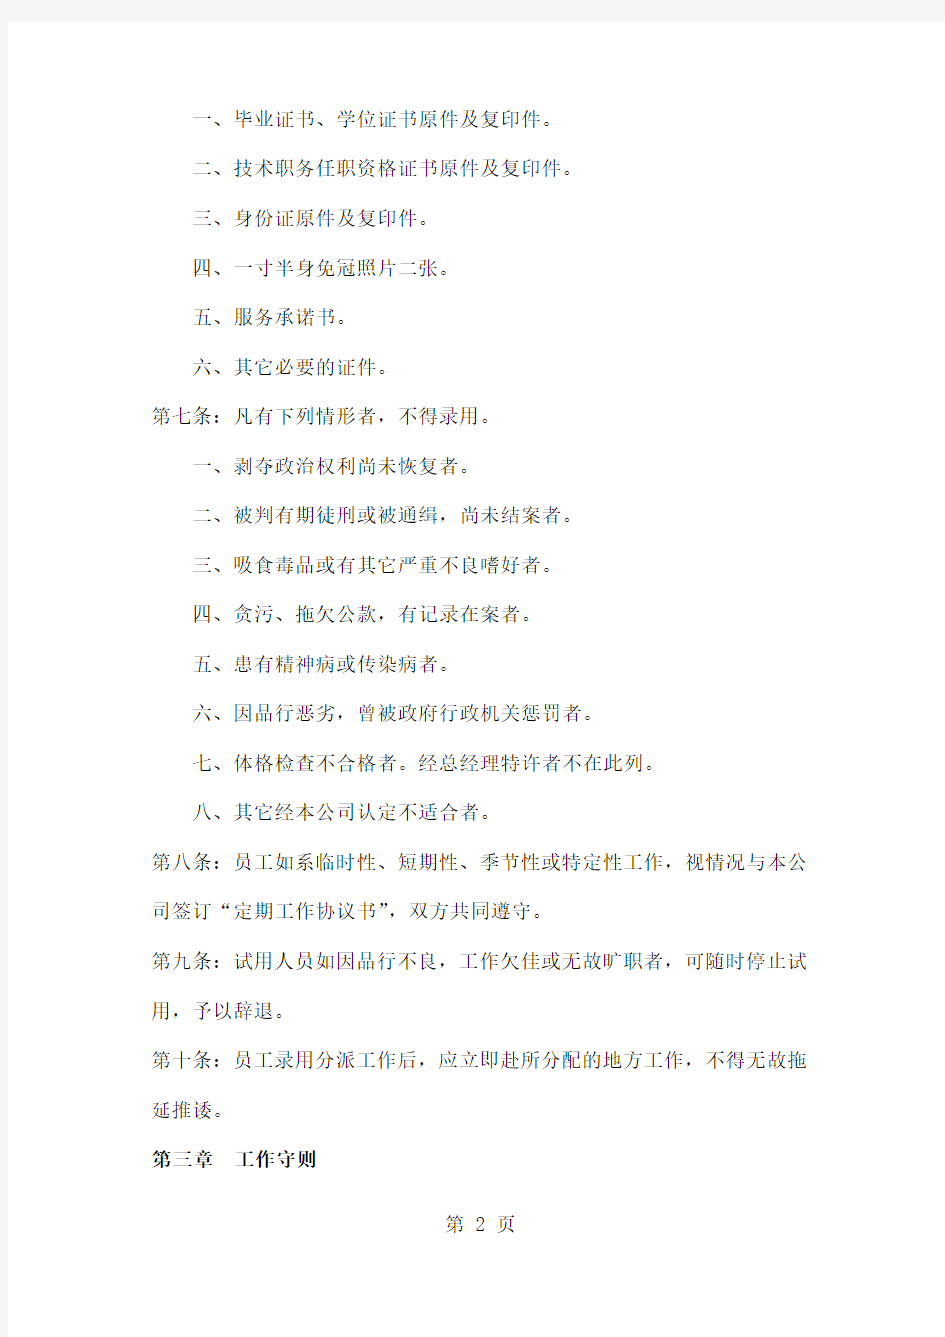 创业公司人事管理制度 (2)16页word文档